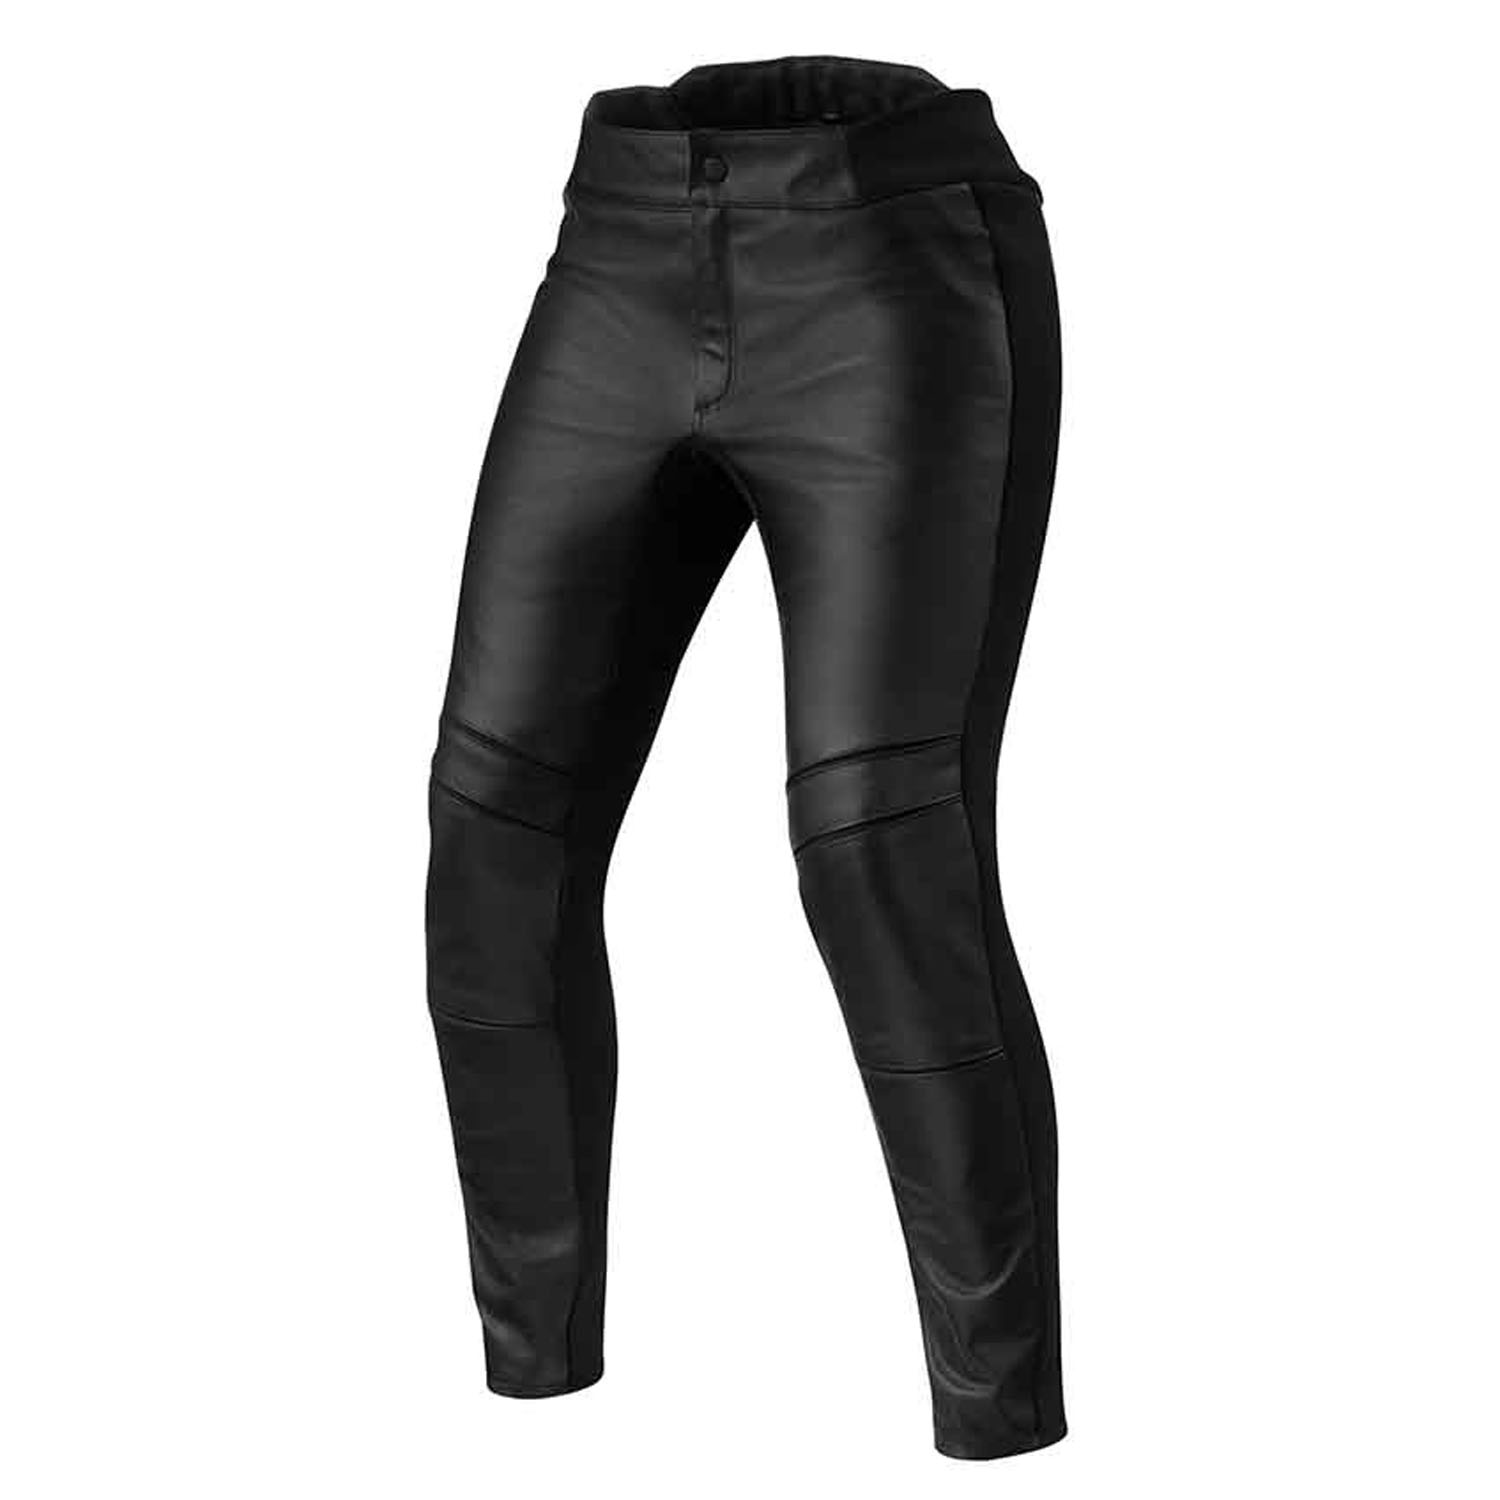 Image of REV'IT! Maci Ladies Black Standard Motorcycle Pants Talla 38